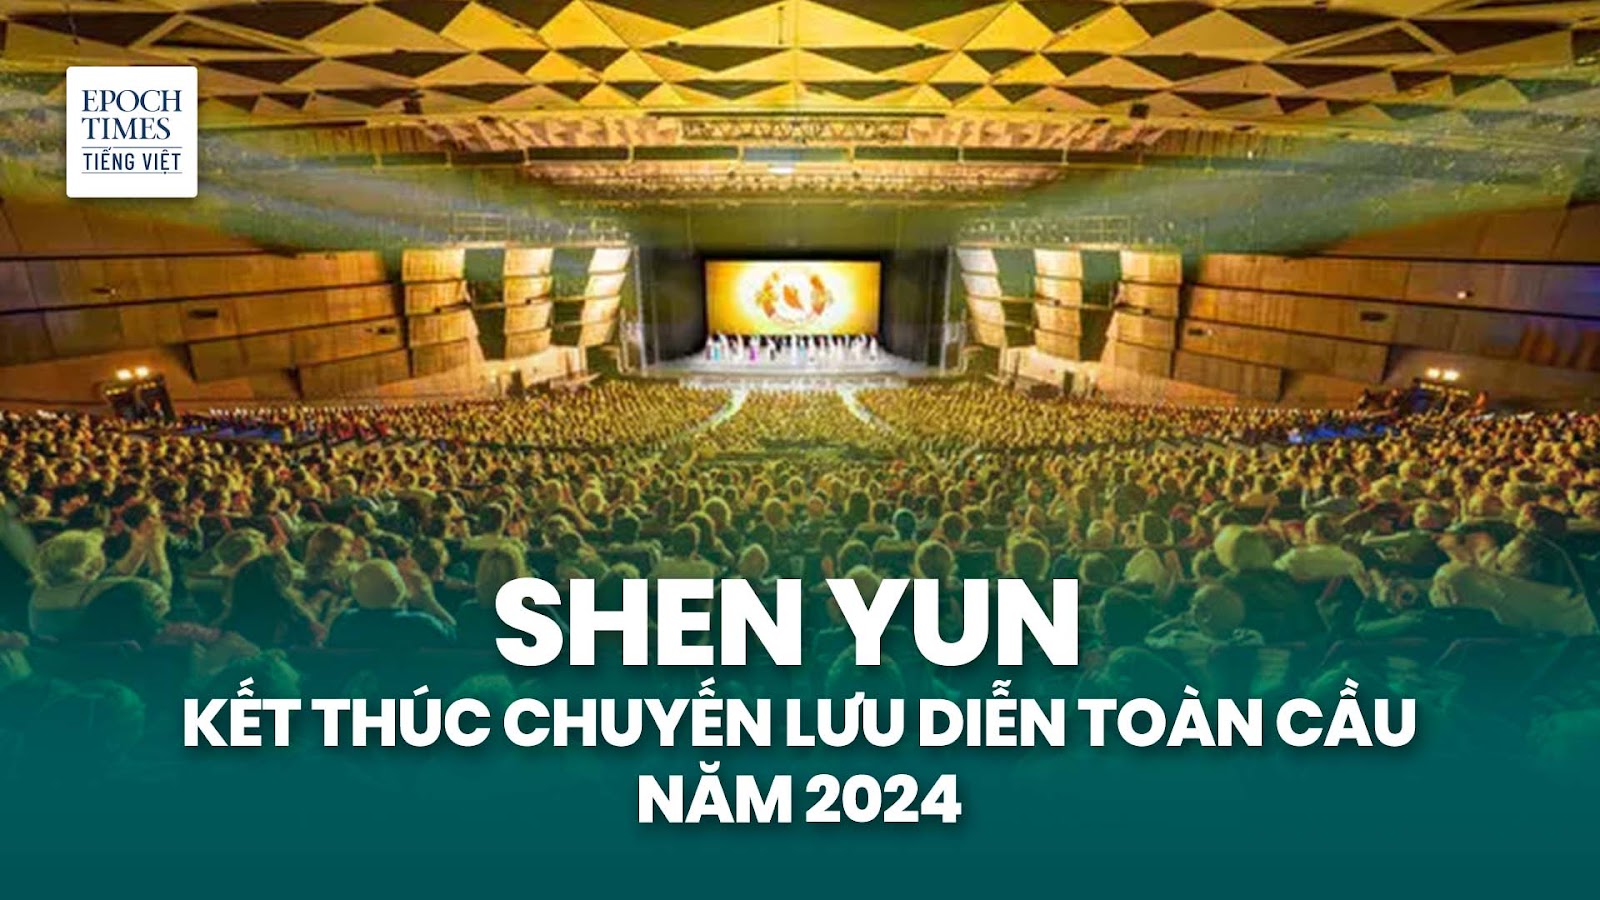 Shen Yun kết thúc chuyến lưu diễn toàn cầu năm 2024 sau khi làm say lòng khán giả khắp 5 châu lục